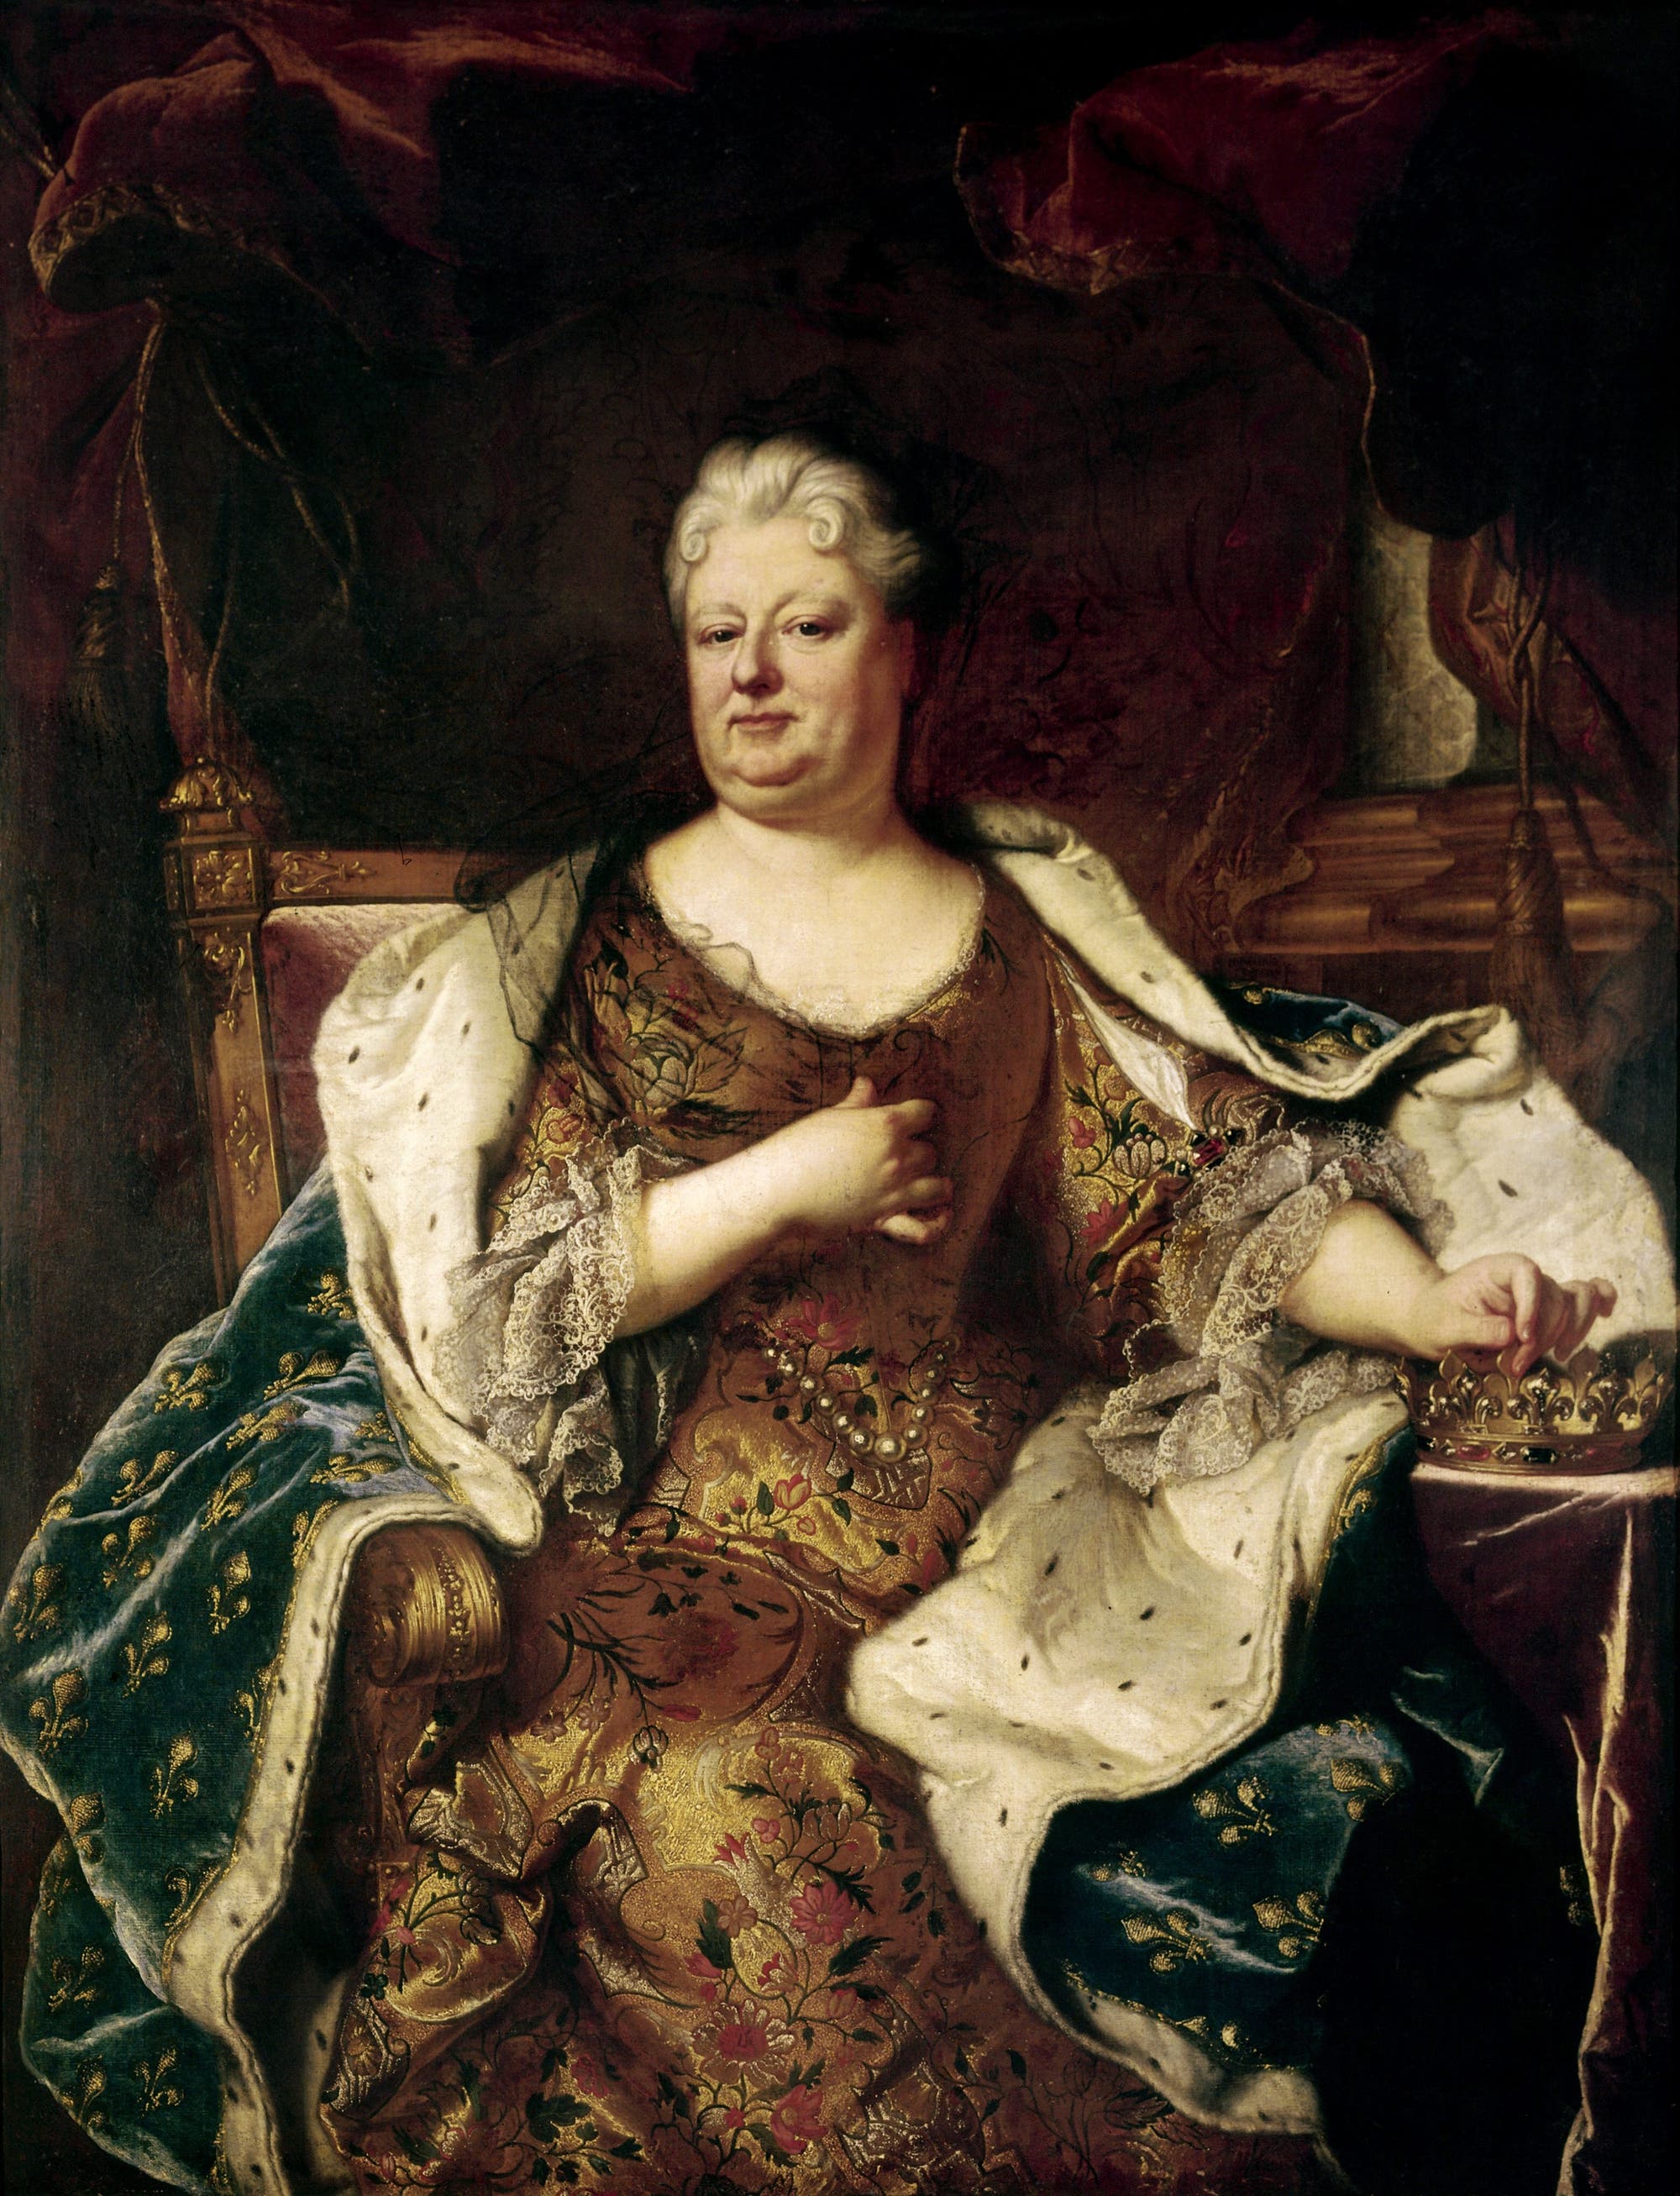 Gemälde der Liselotte von der Pfalz. Das Bild malte Hyacinthe Rigaud um 1710/20.